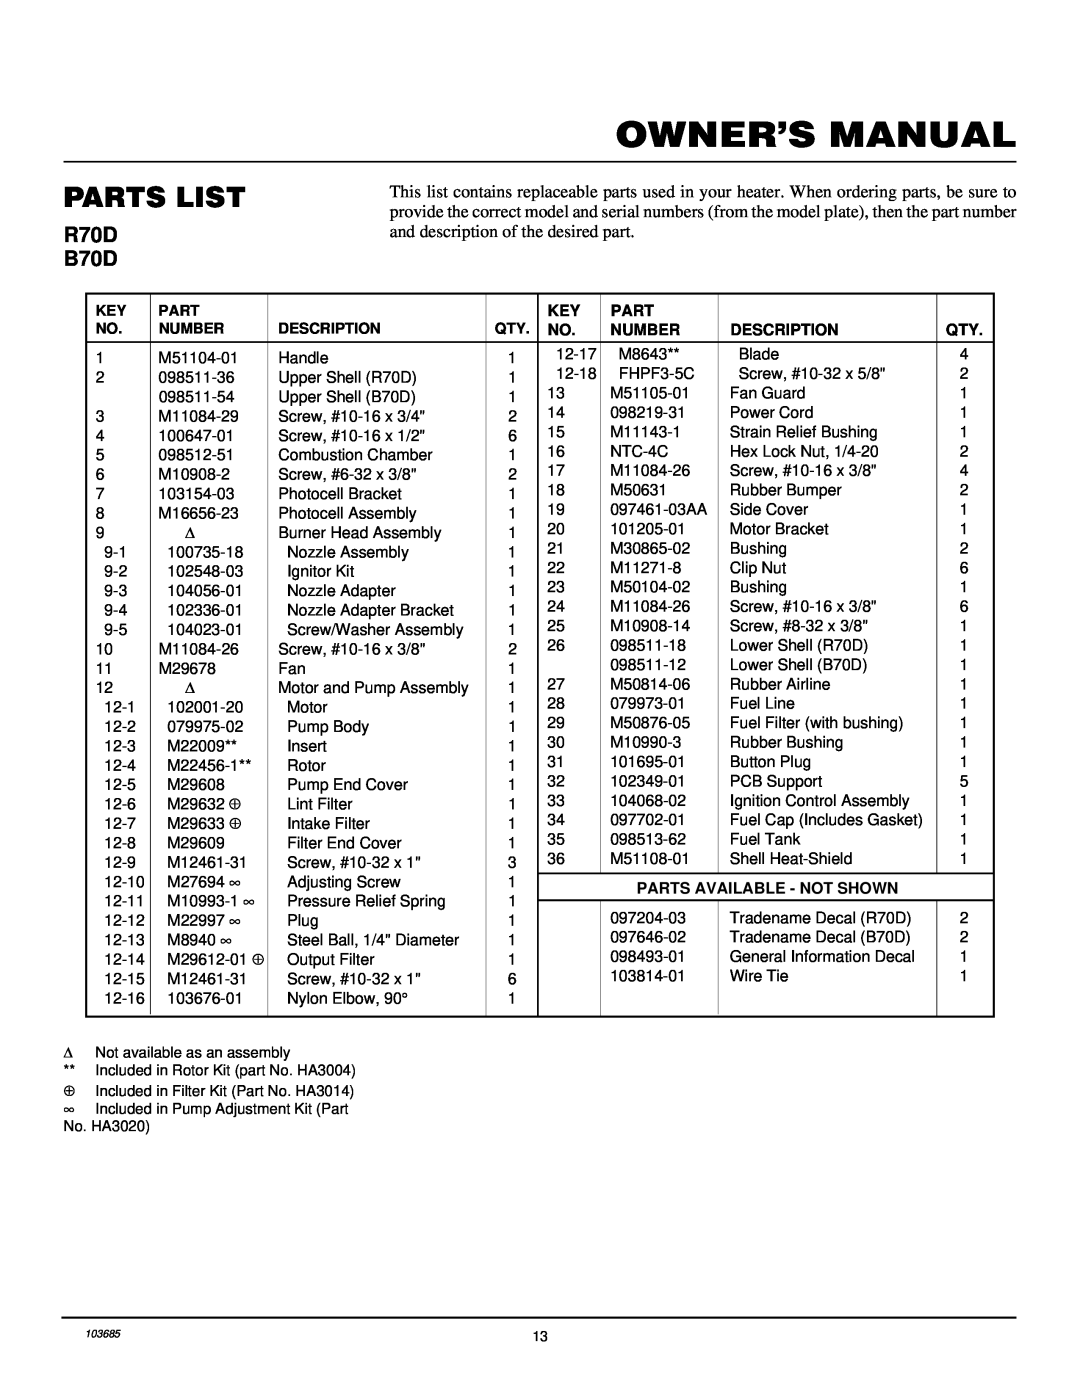 Desa owner manual Parts List, R70D B70D, Number, Description, Parts Available - Not Shown 